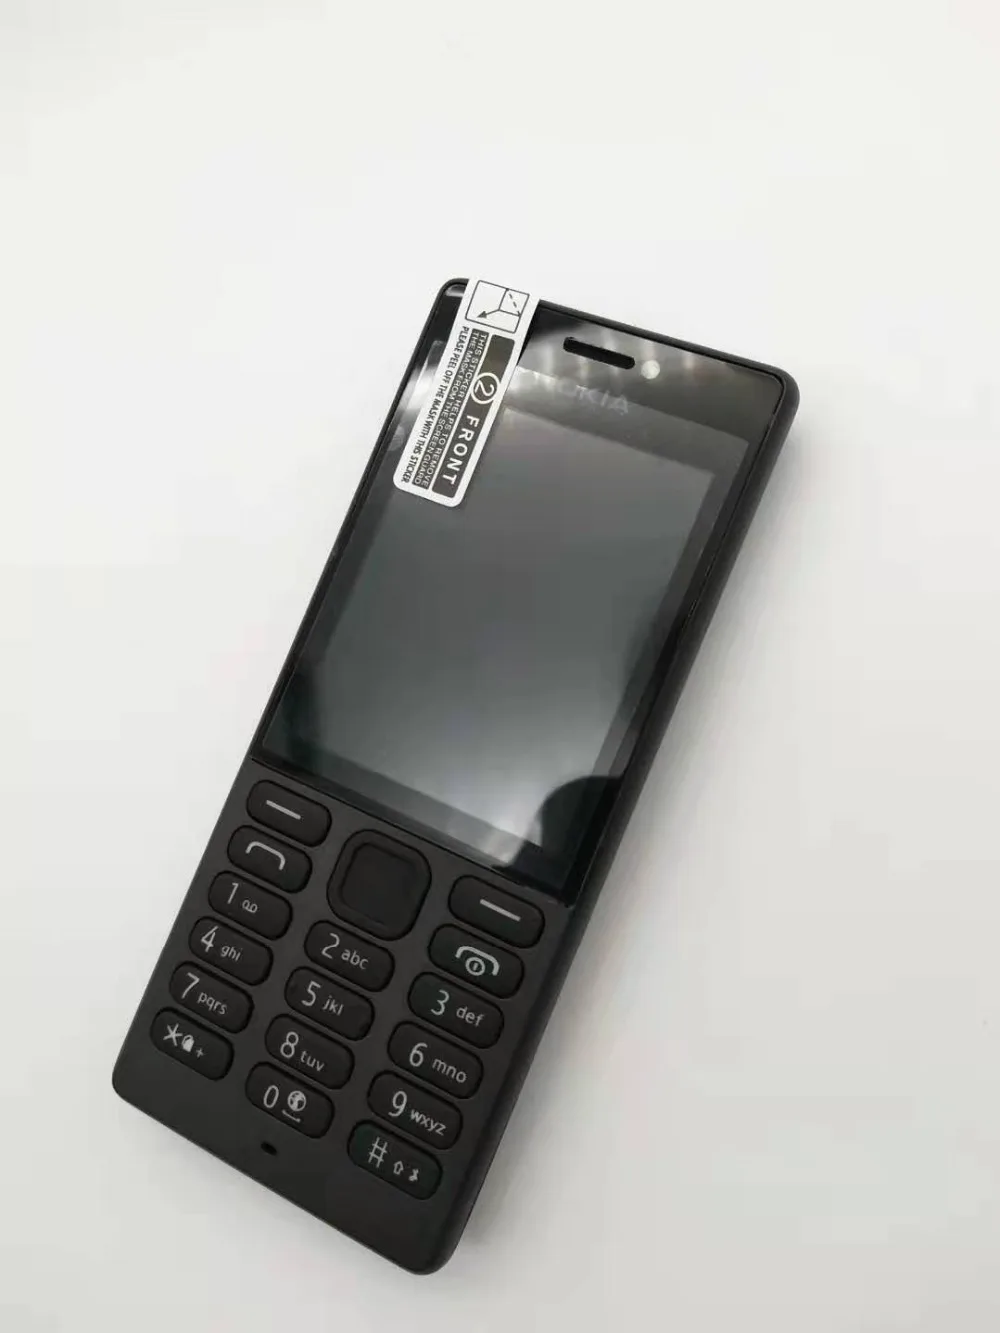 216 Dual Sim 100% Оригинал Nokia 216 Dual sim карты 2 г GSM 1100 мАч разблокирована дешевые Celluar телефон Восстановленное Бесплатная доставка